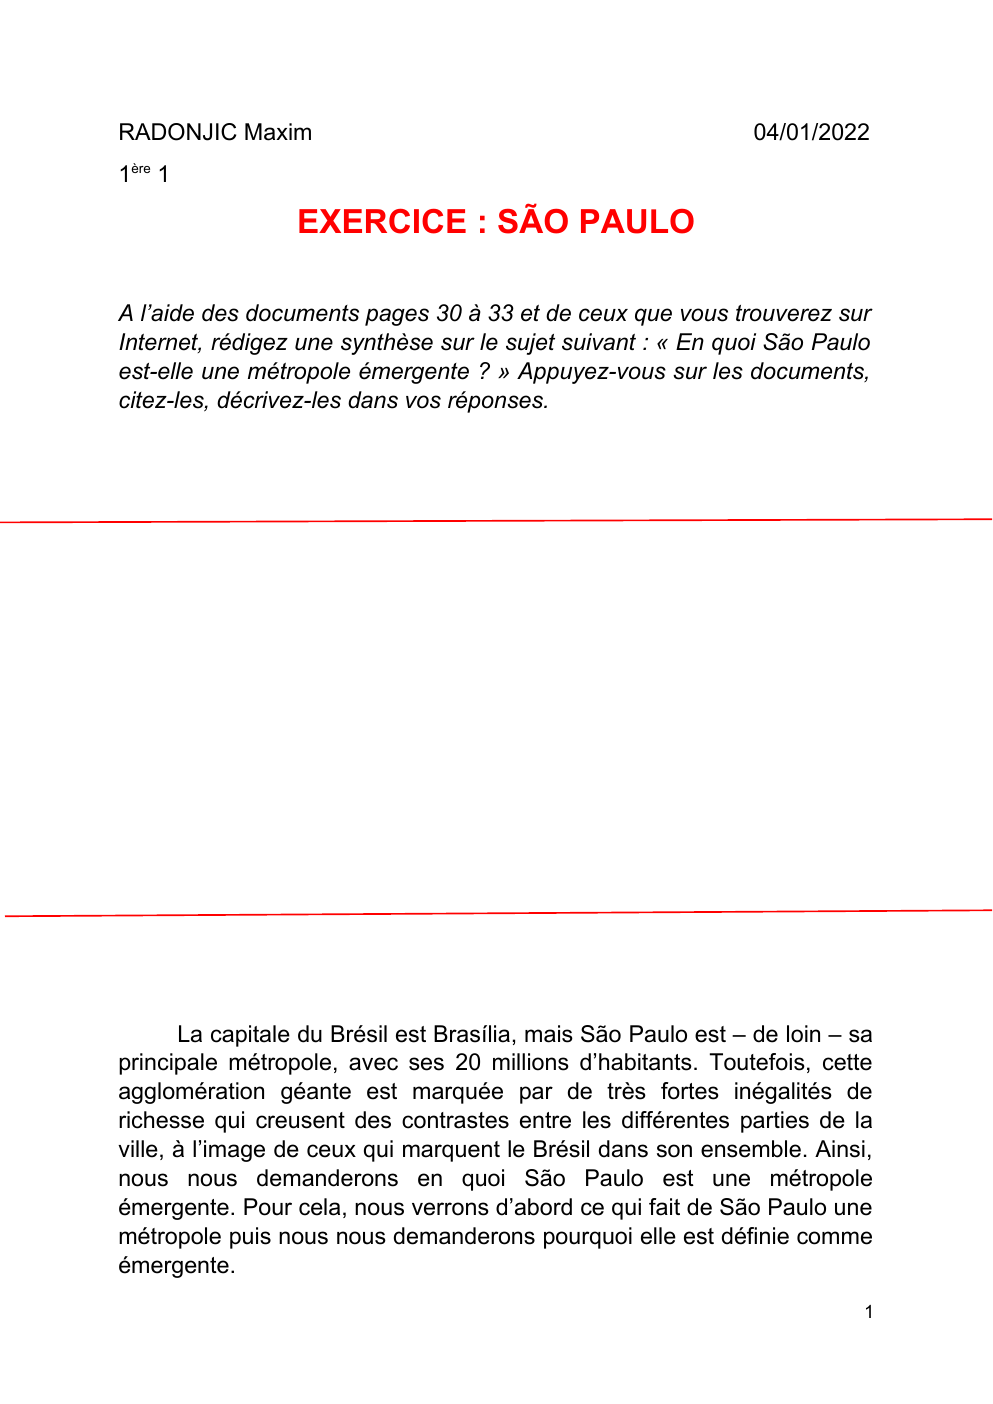 Prévisualisation du document En quoi São Paulo est-elle une métropole émergente ?